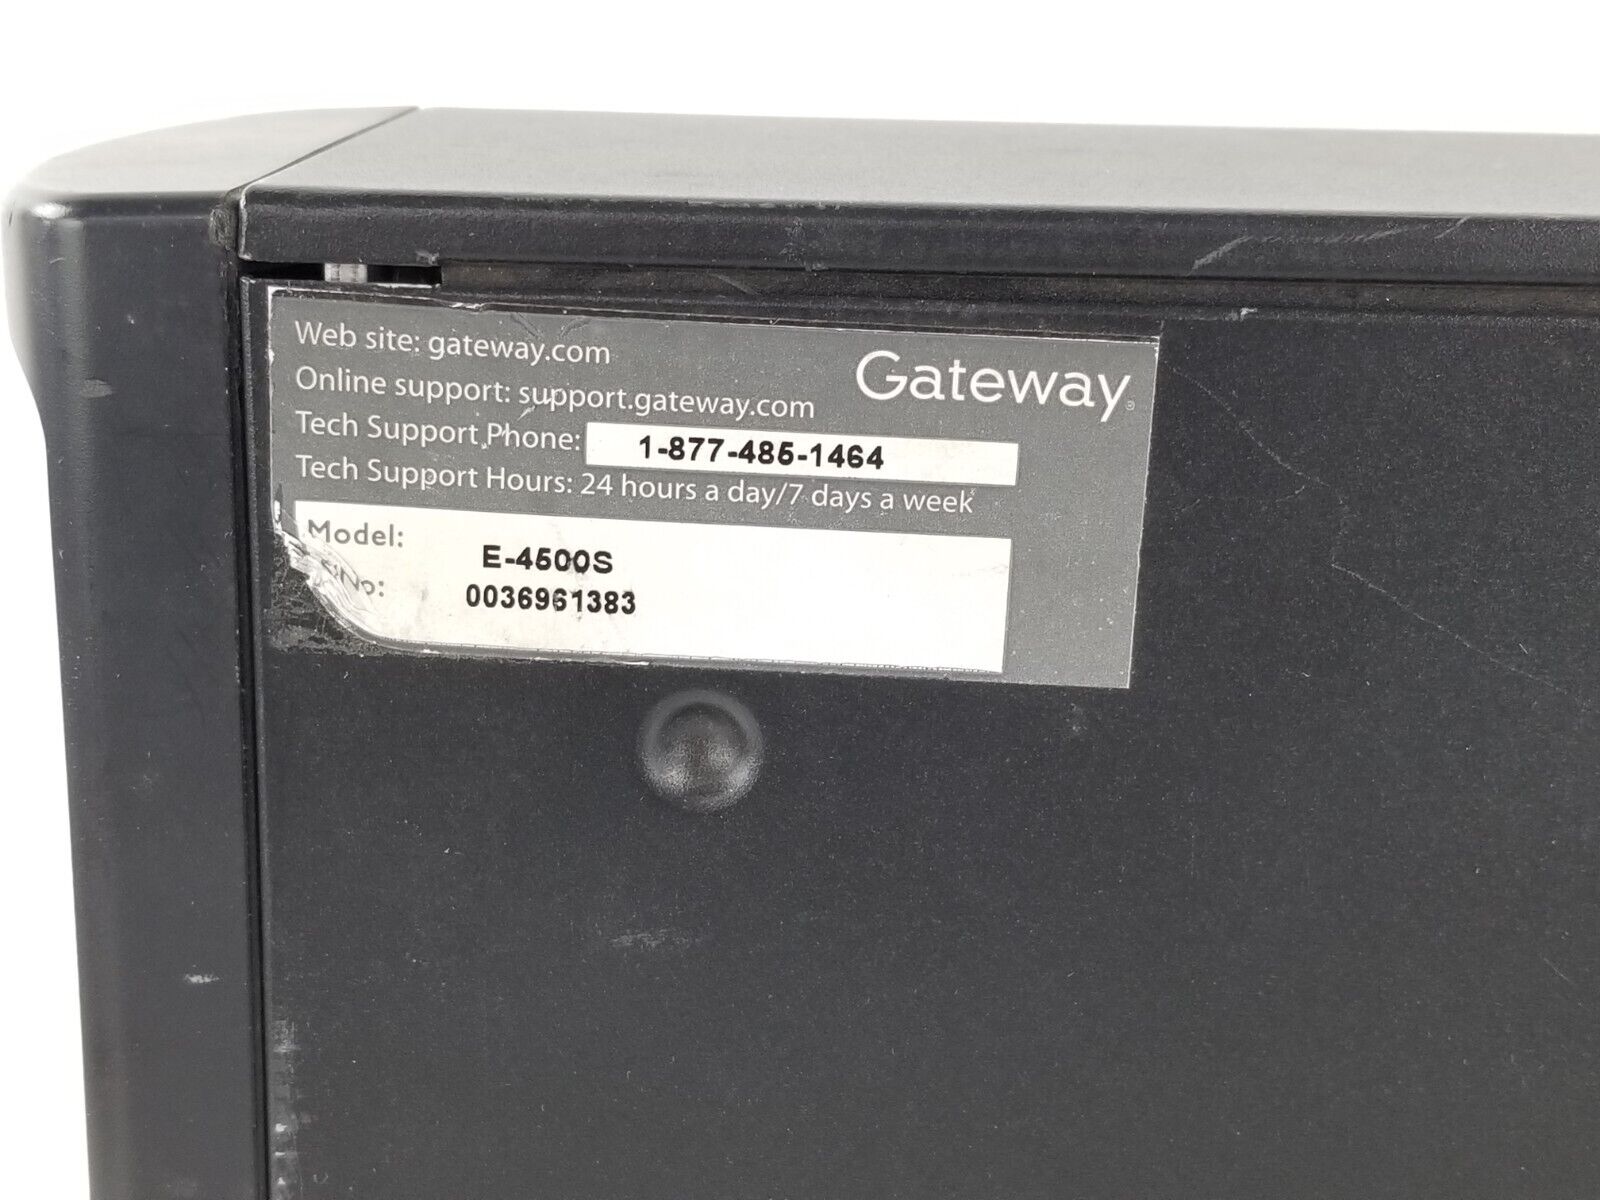 Gateway E-4500s Computer Intel Pentium 4 3GHz 1GB RAM No HDD No Optical No OS